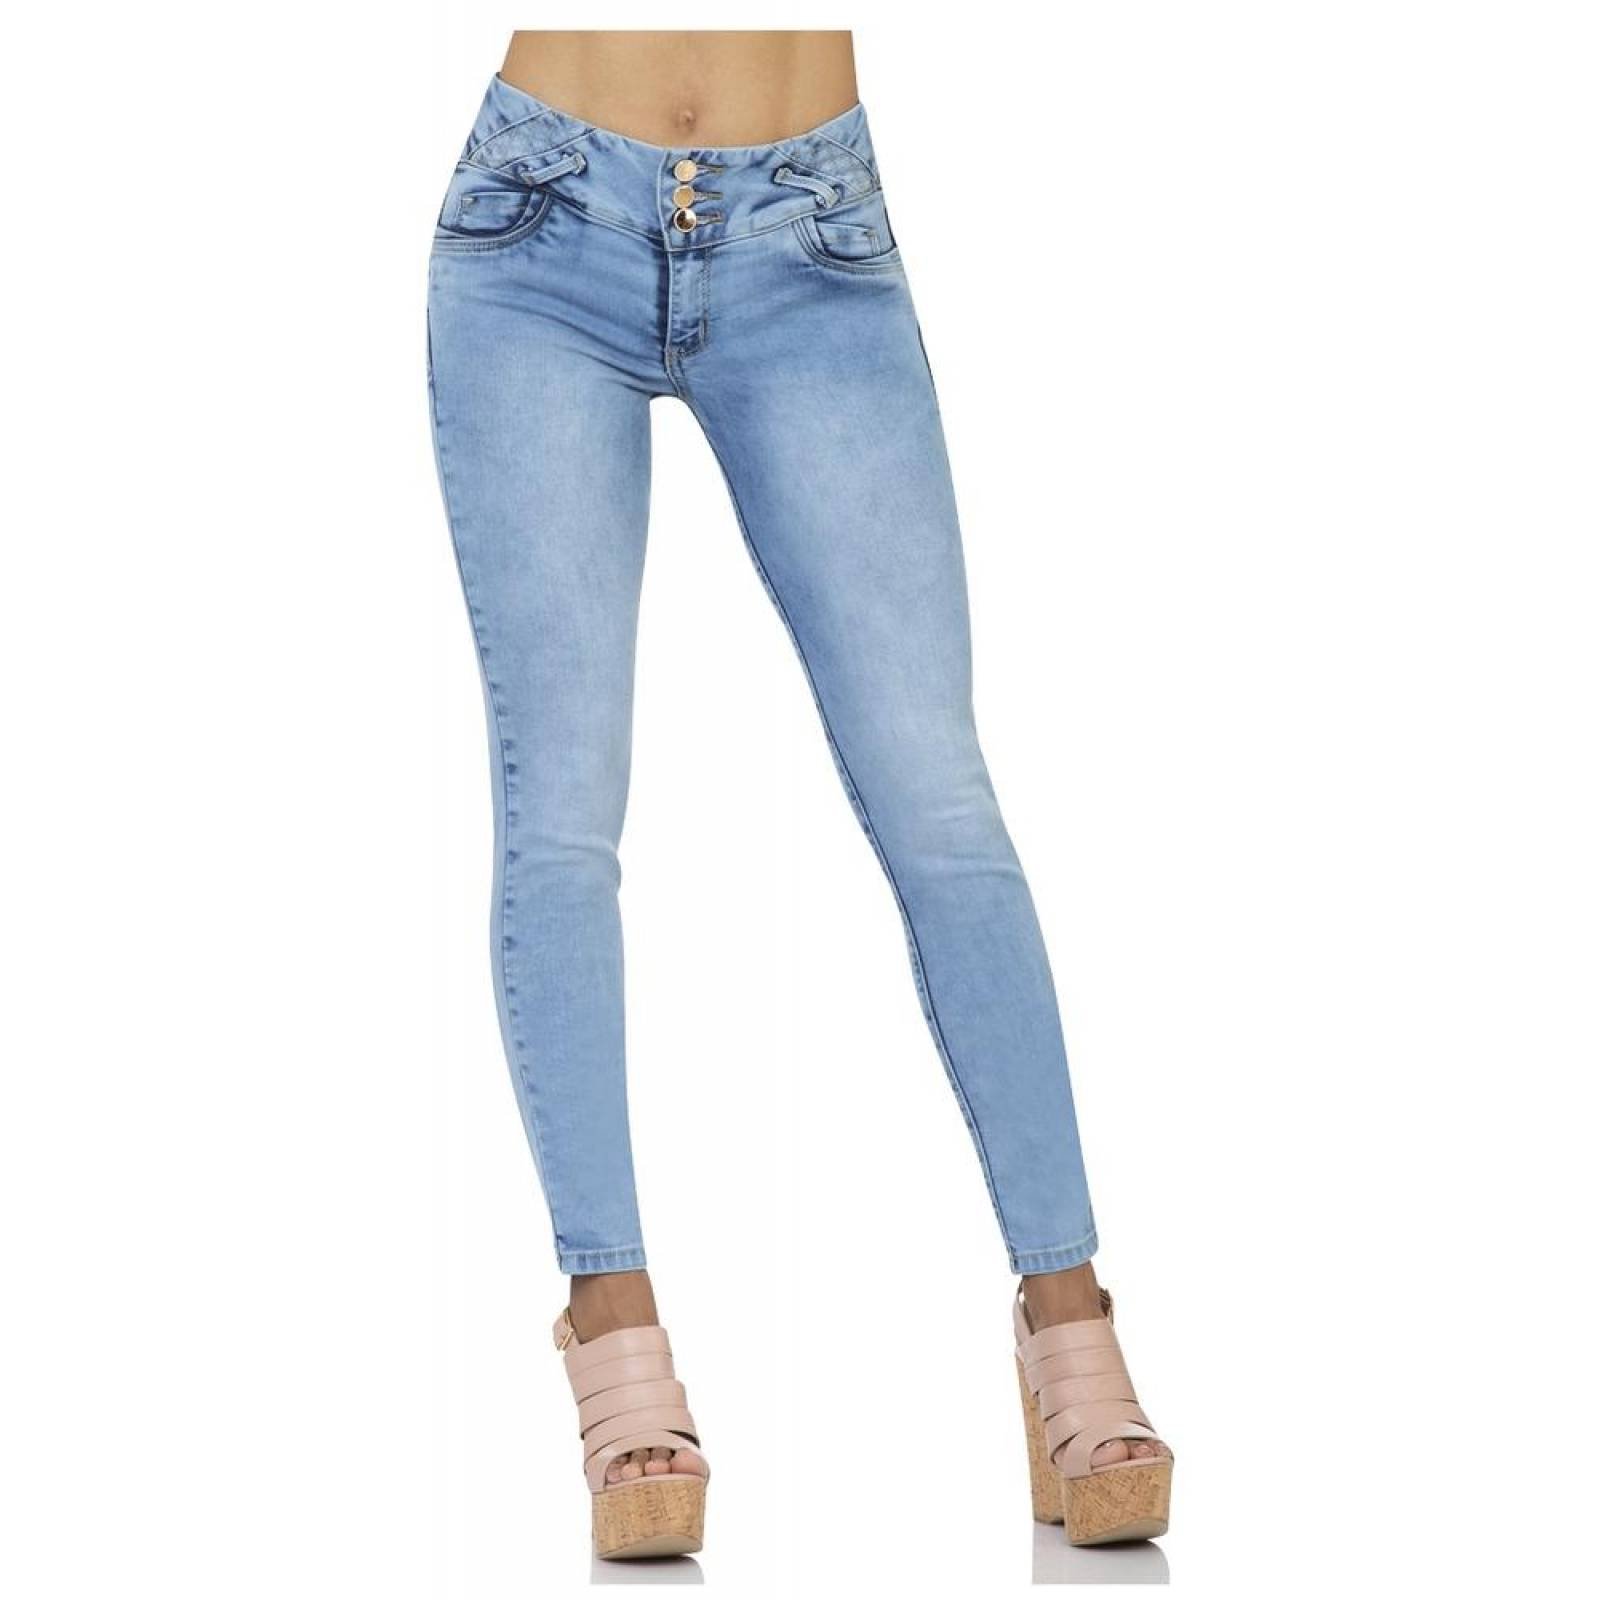 Jeans Moda Mujer Salvaje Tentación Bleach 63103203 Mezclilla Stretch 